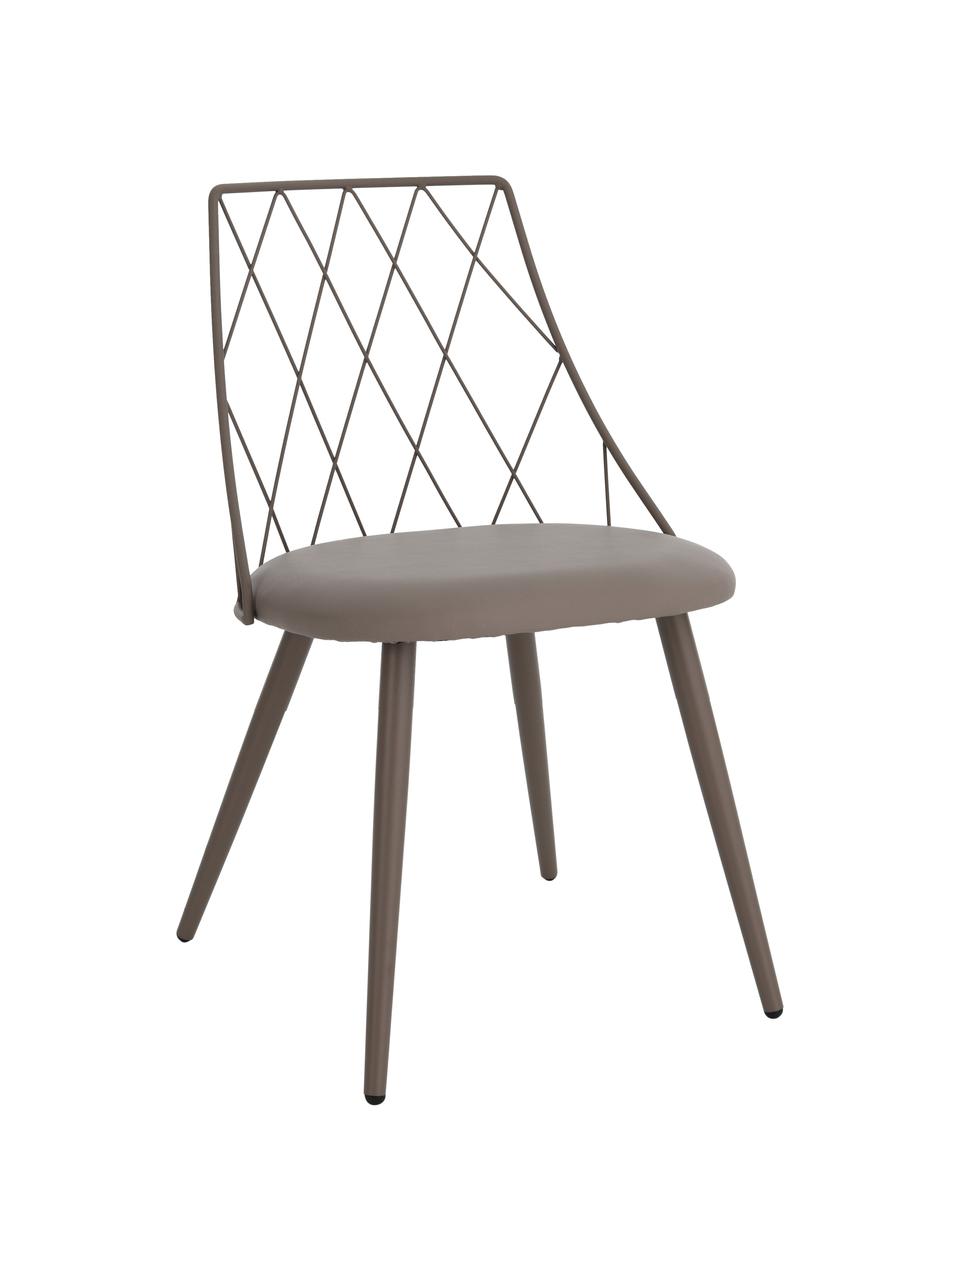 Kunstleren stoelen Addie in taupe, 2 stuks, Frame: metaal, gecoat, Kunstleer taupe, B 49 cm x D 49 cm